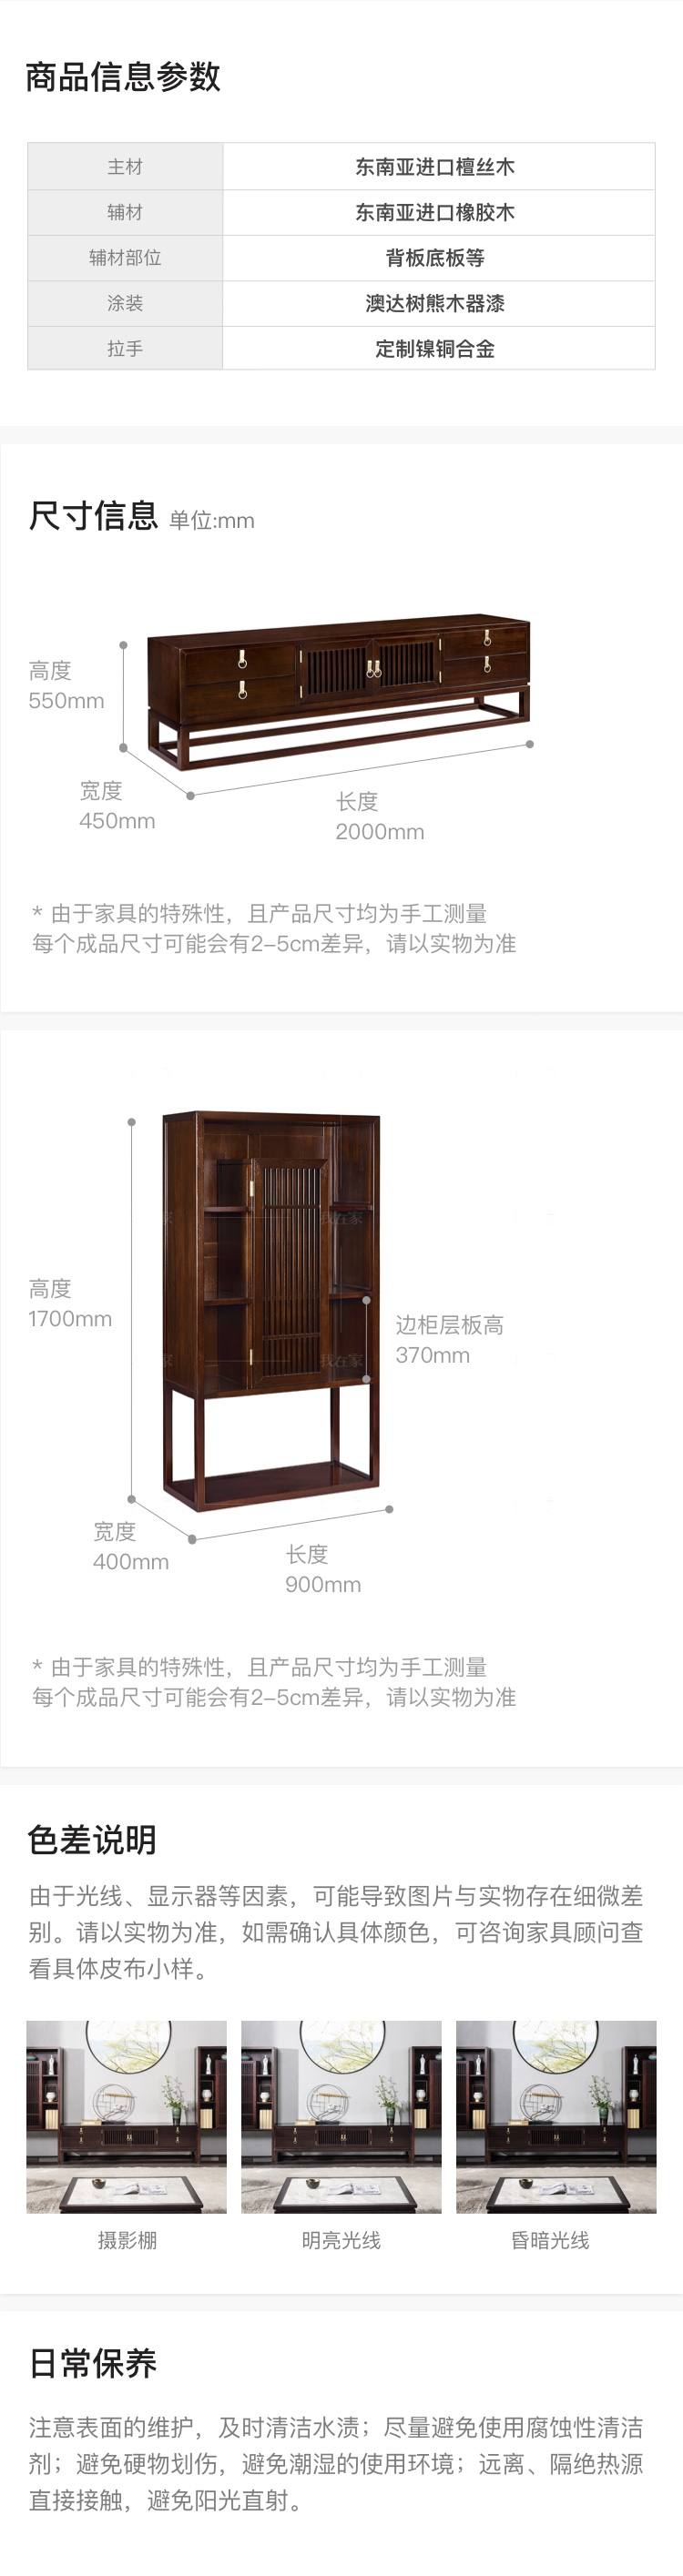 新中式风格似锦电视柜的家具详细介绍